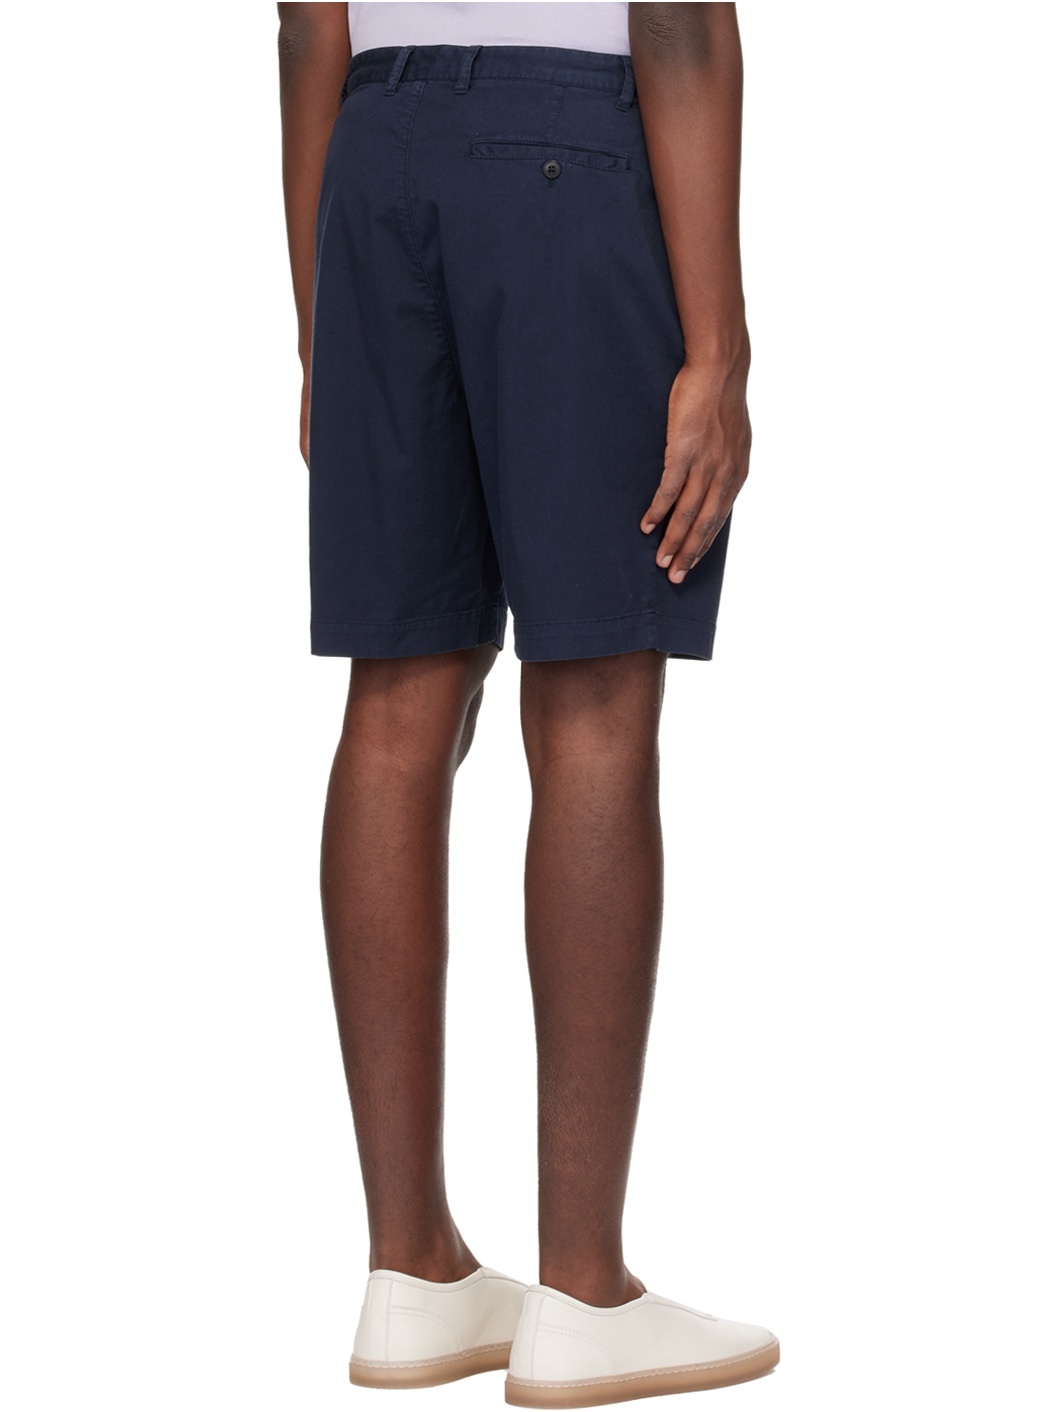 Navy Pleated Shorts - 3